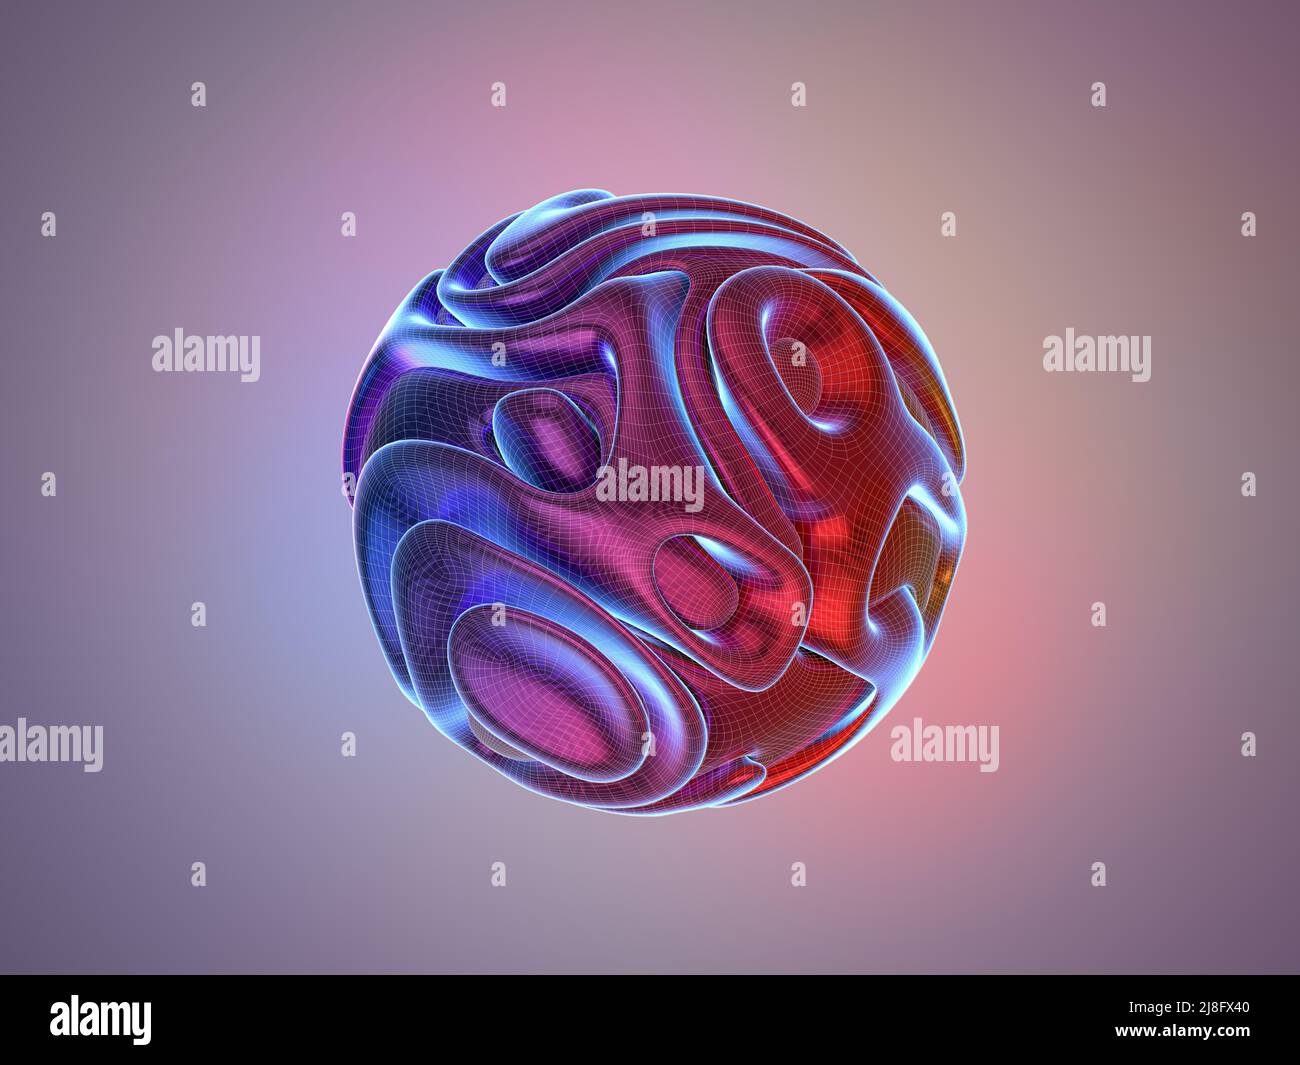 3D rappresentazione di sfera estetica astratta d'arte con parte di forme volate aliene in curve sferiche ondulate e torsioni in materiale metallico opaco lucido in rosso Foto Stock